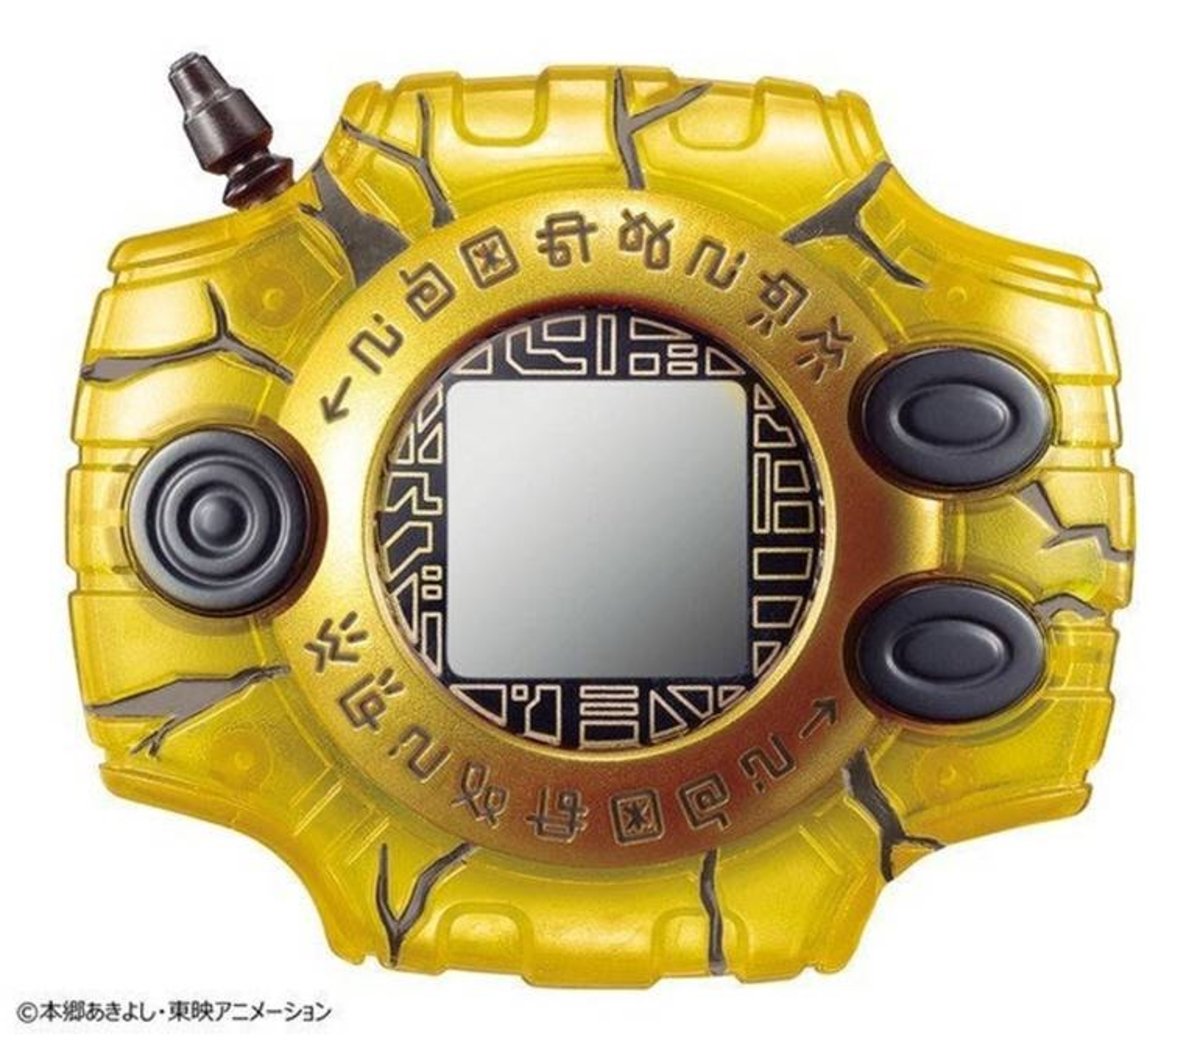 Los fans de Digimon tienen un nuevo Digivice real al que echarle el guante